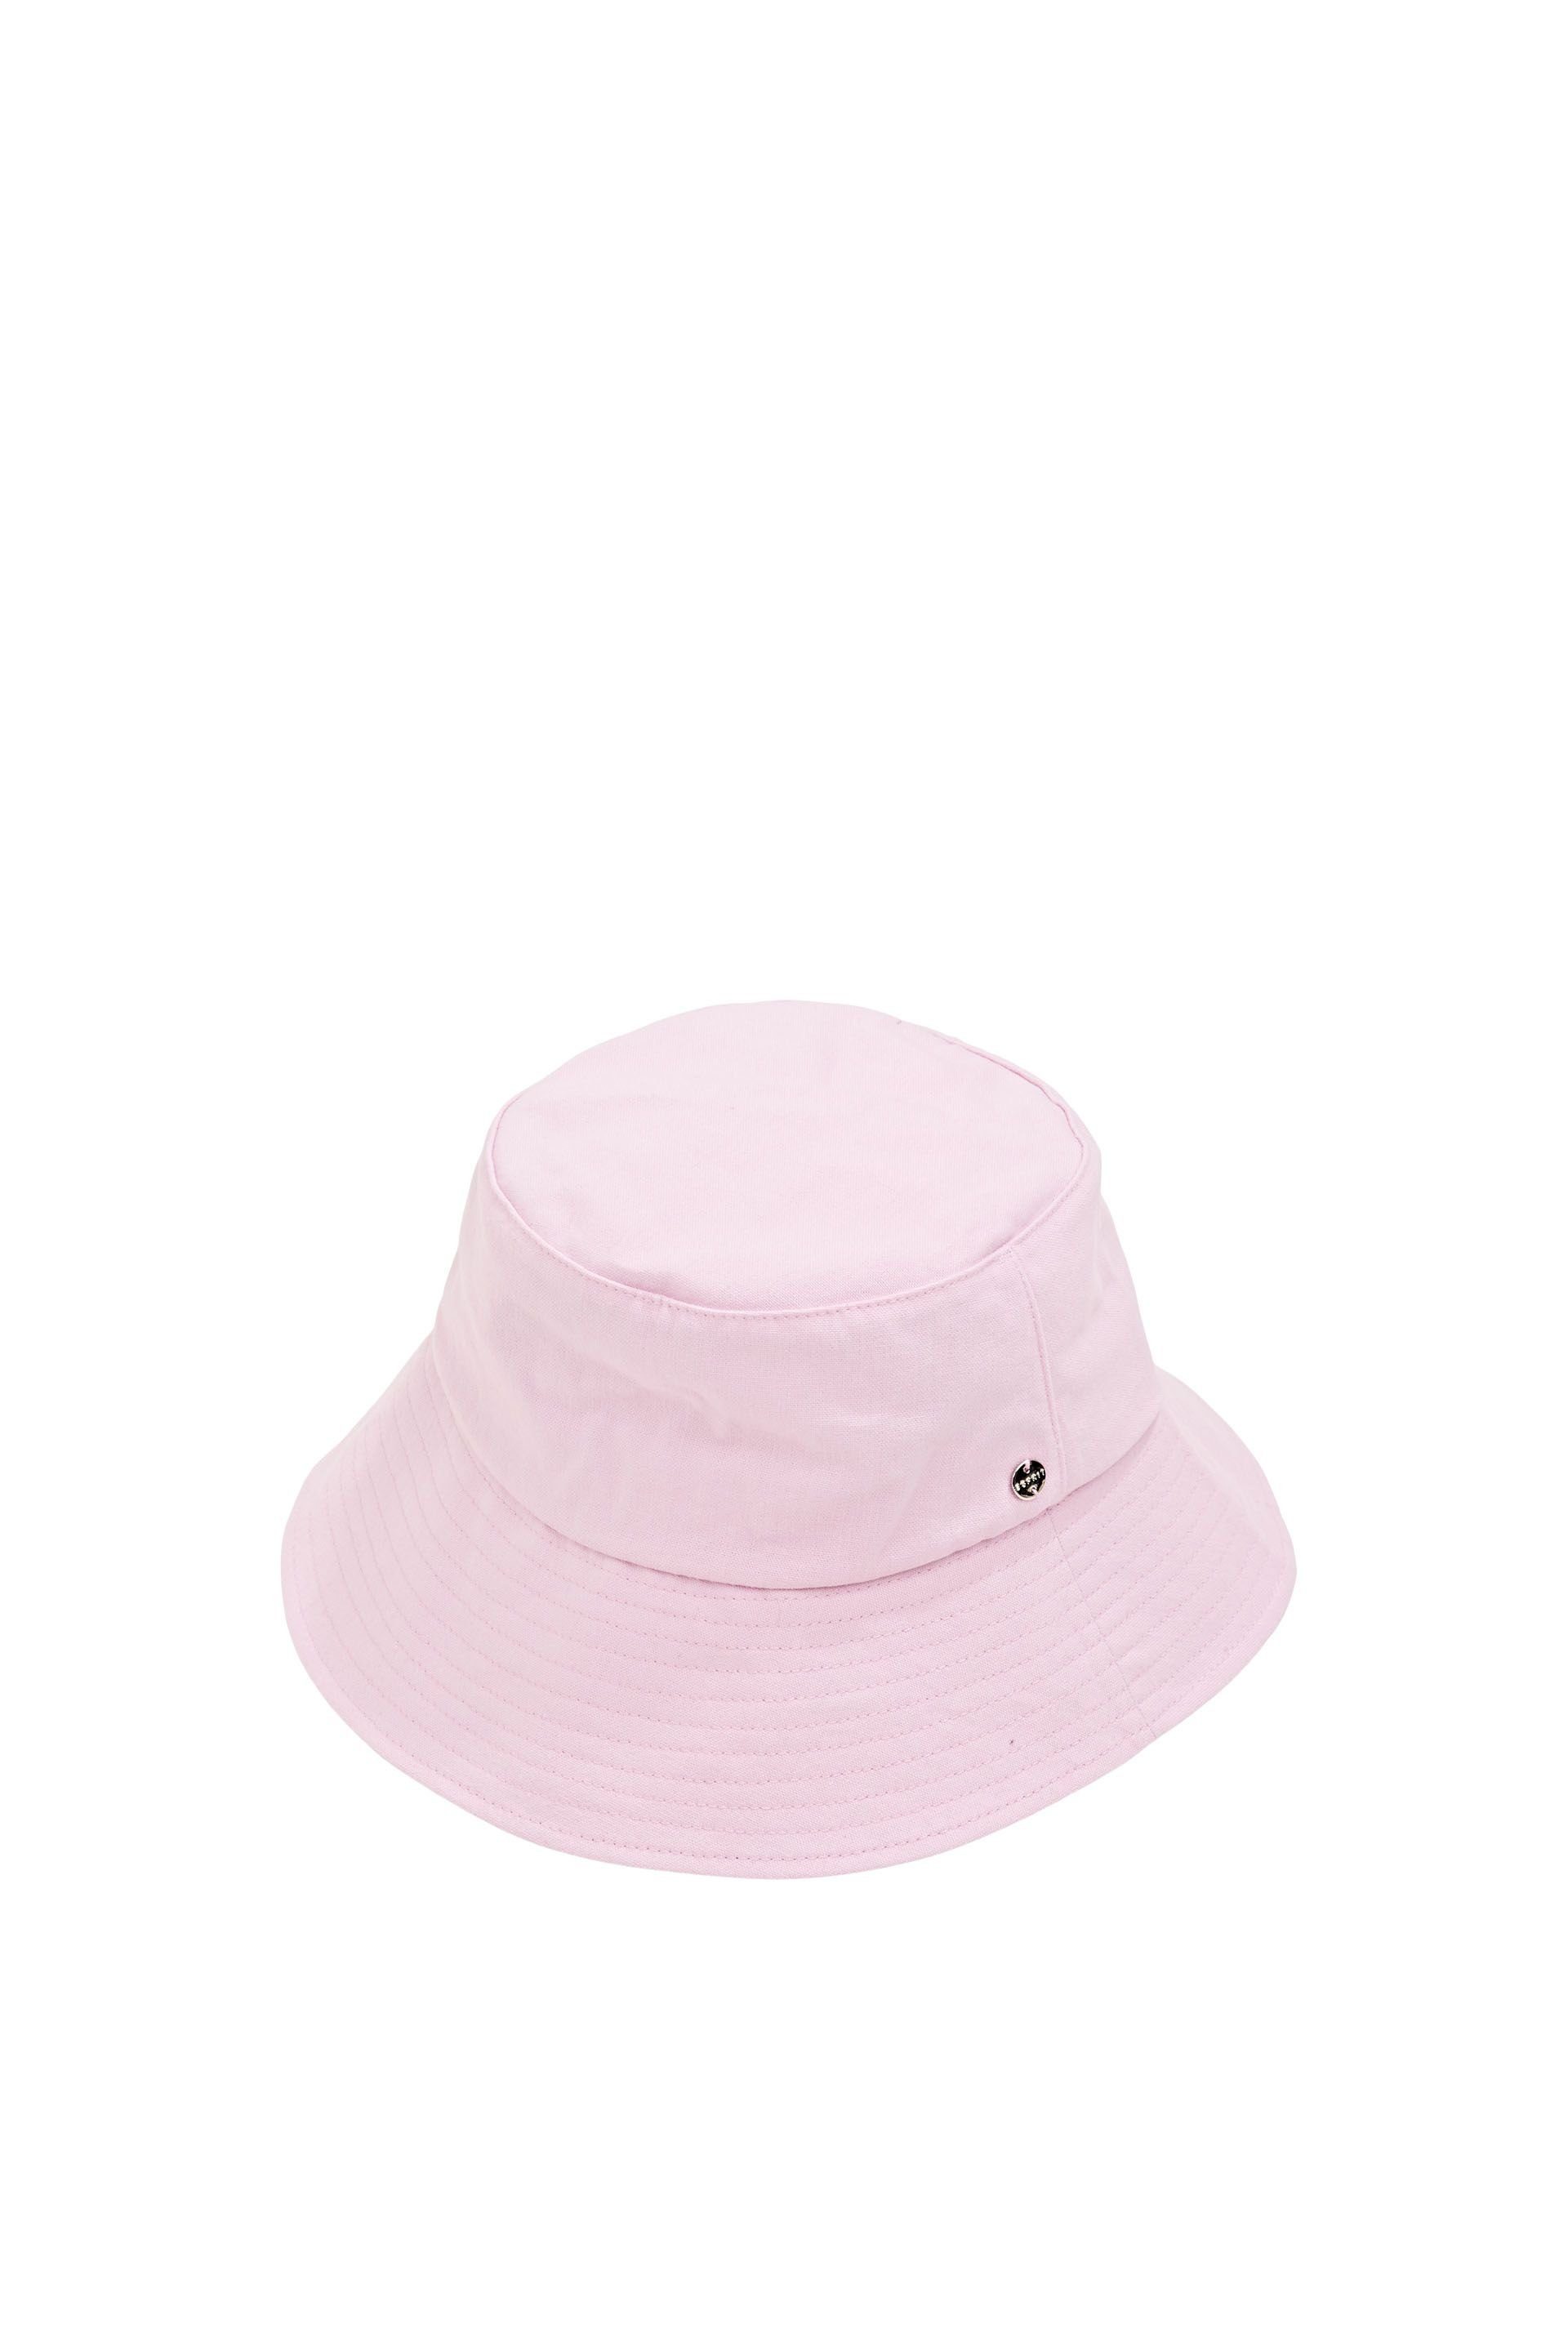 Esprit Baseball Cap cap pink